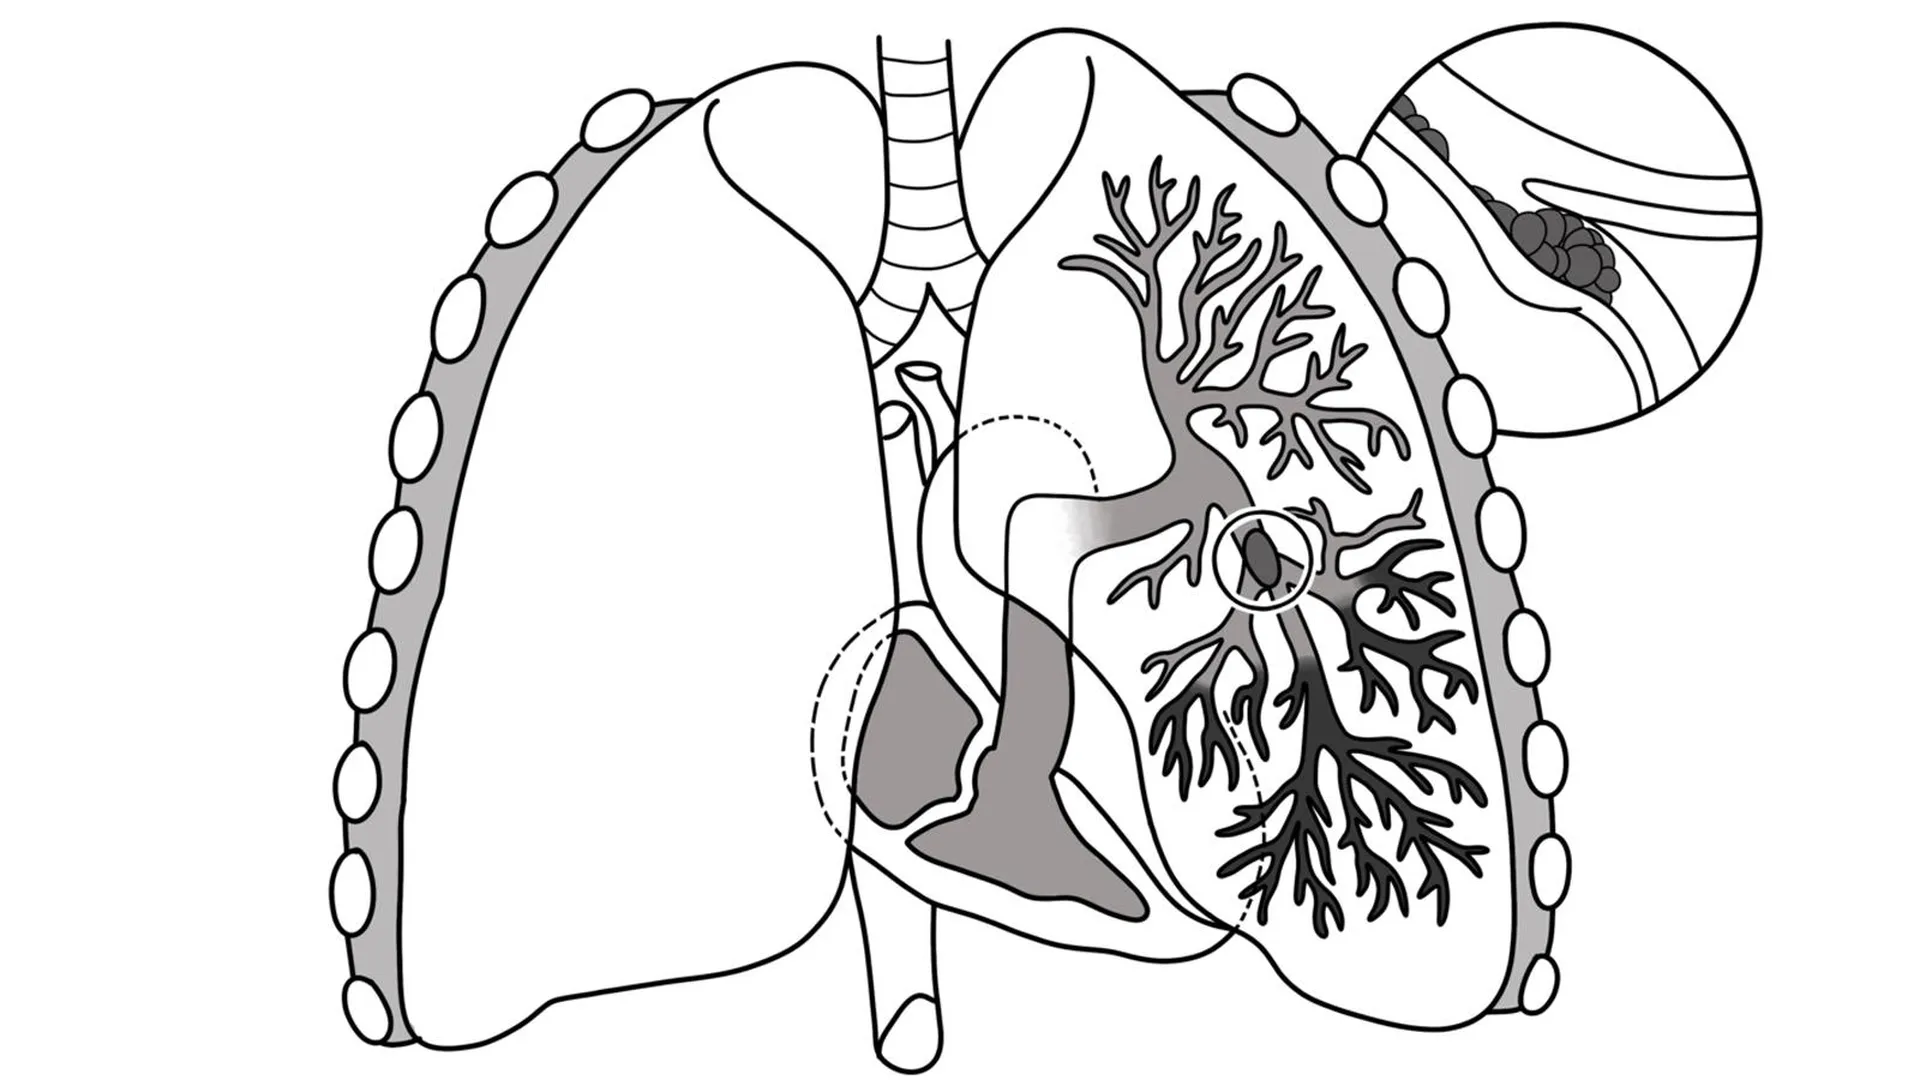 Иллюстрация тромбоэмболии легочной артерии